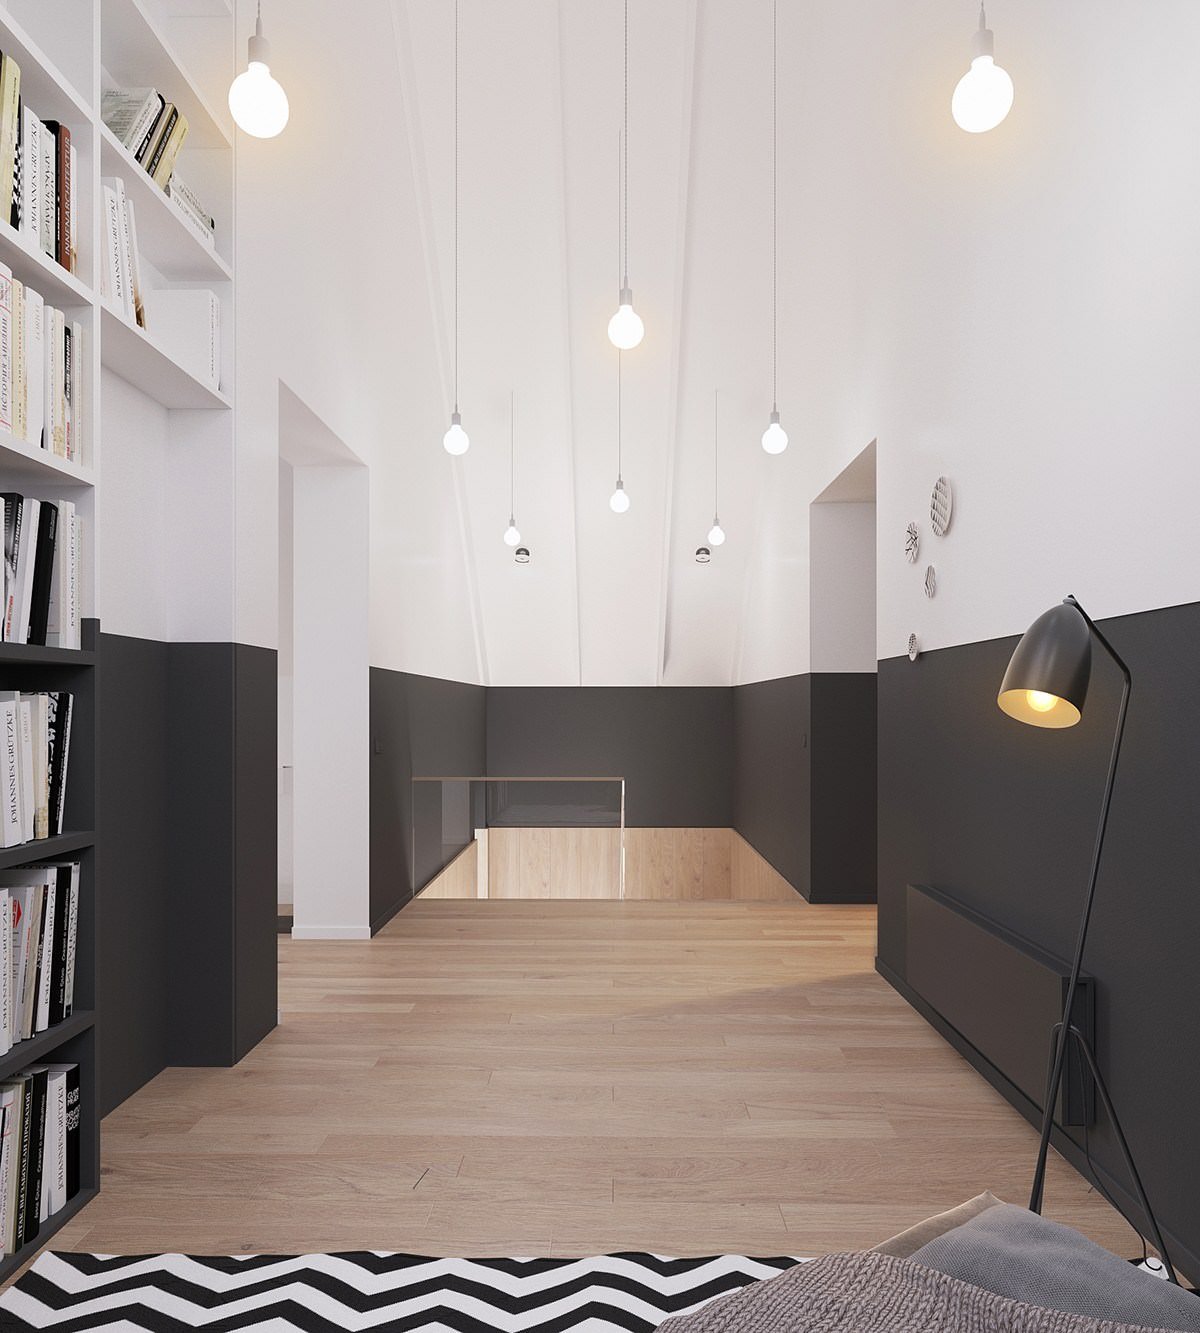 Vernice in bianco e nero su tutta la lunghezza della stanza - scelta attraente per una casa moderna scandinava